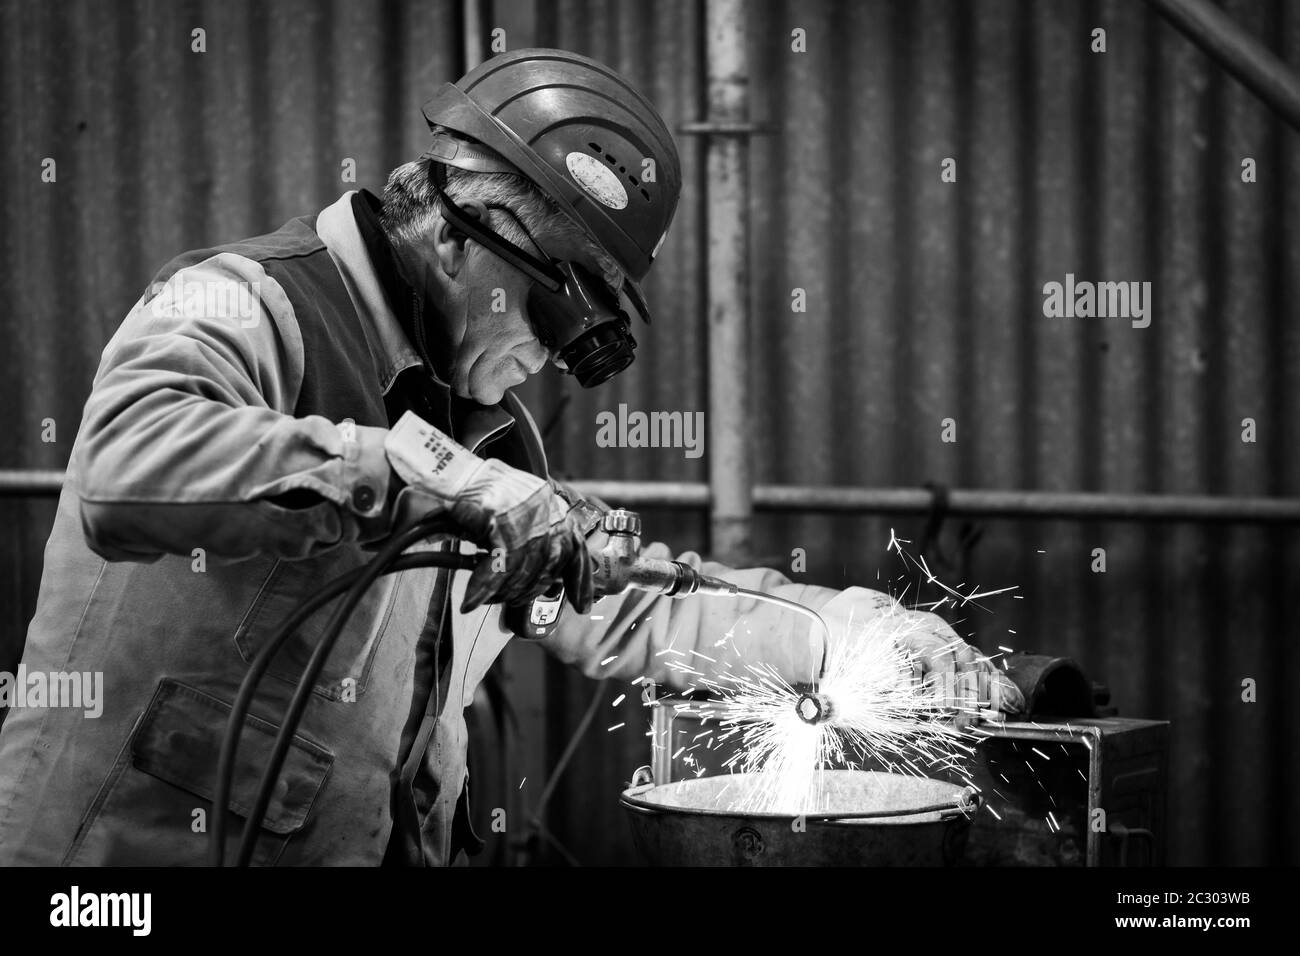 Un mécanicien avec casque de sécurité fait des autogènes coupant un tuyau avec une flamme d'acétylène et d'oxygène. Des étincelles sont émises par le matériau. Banque D'Images